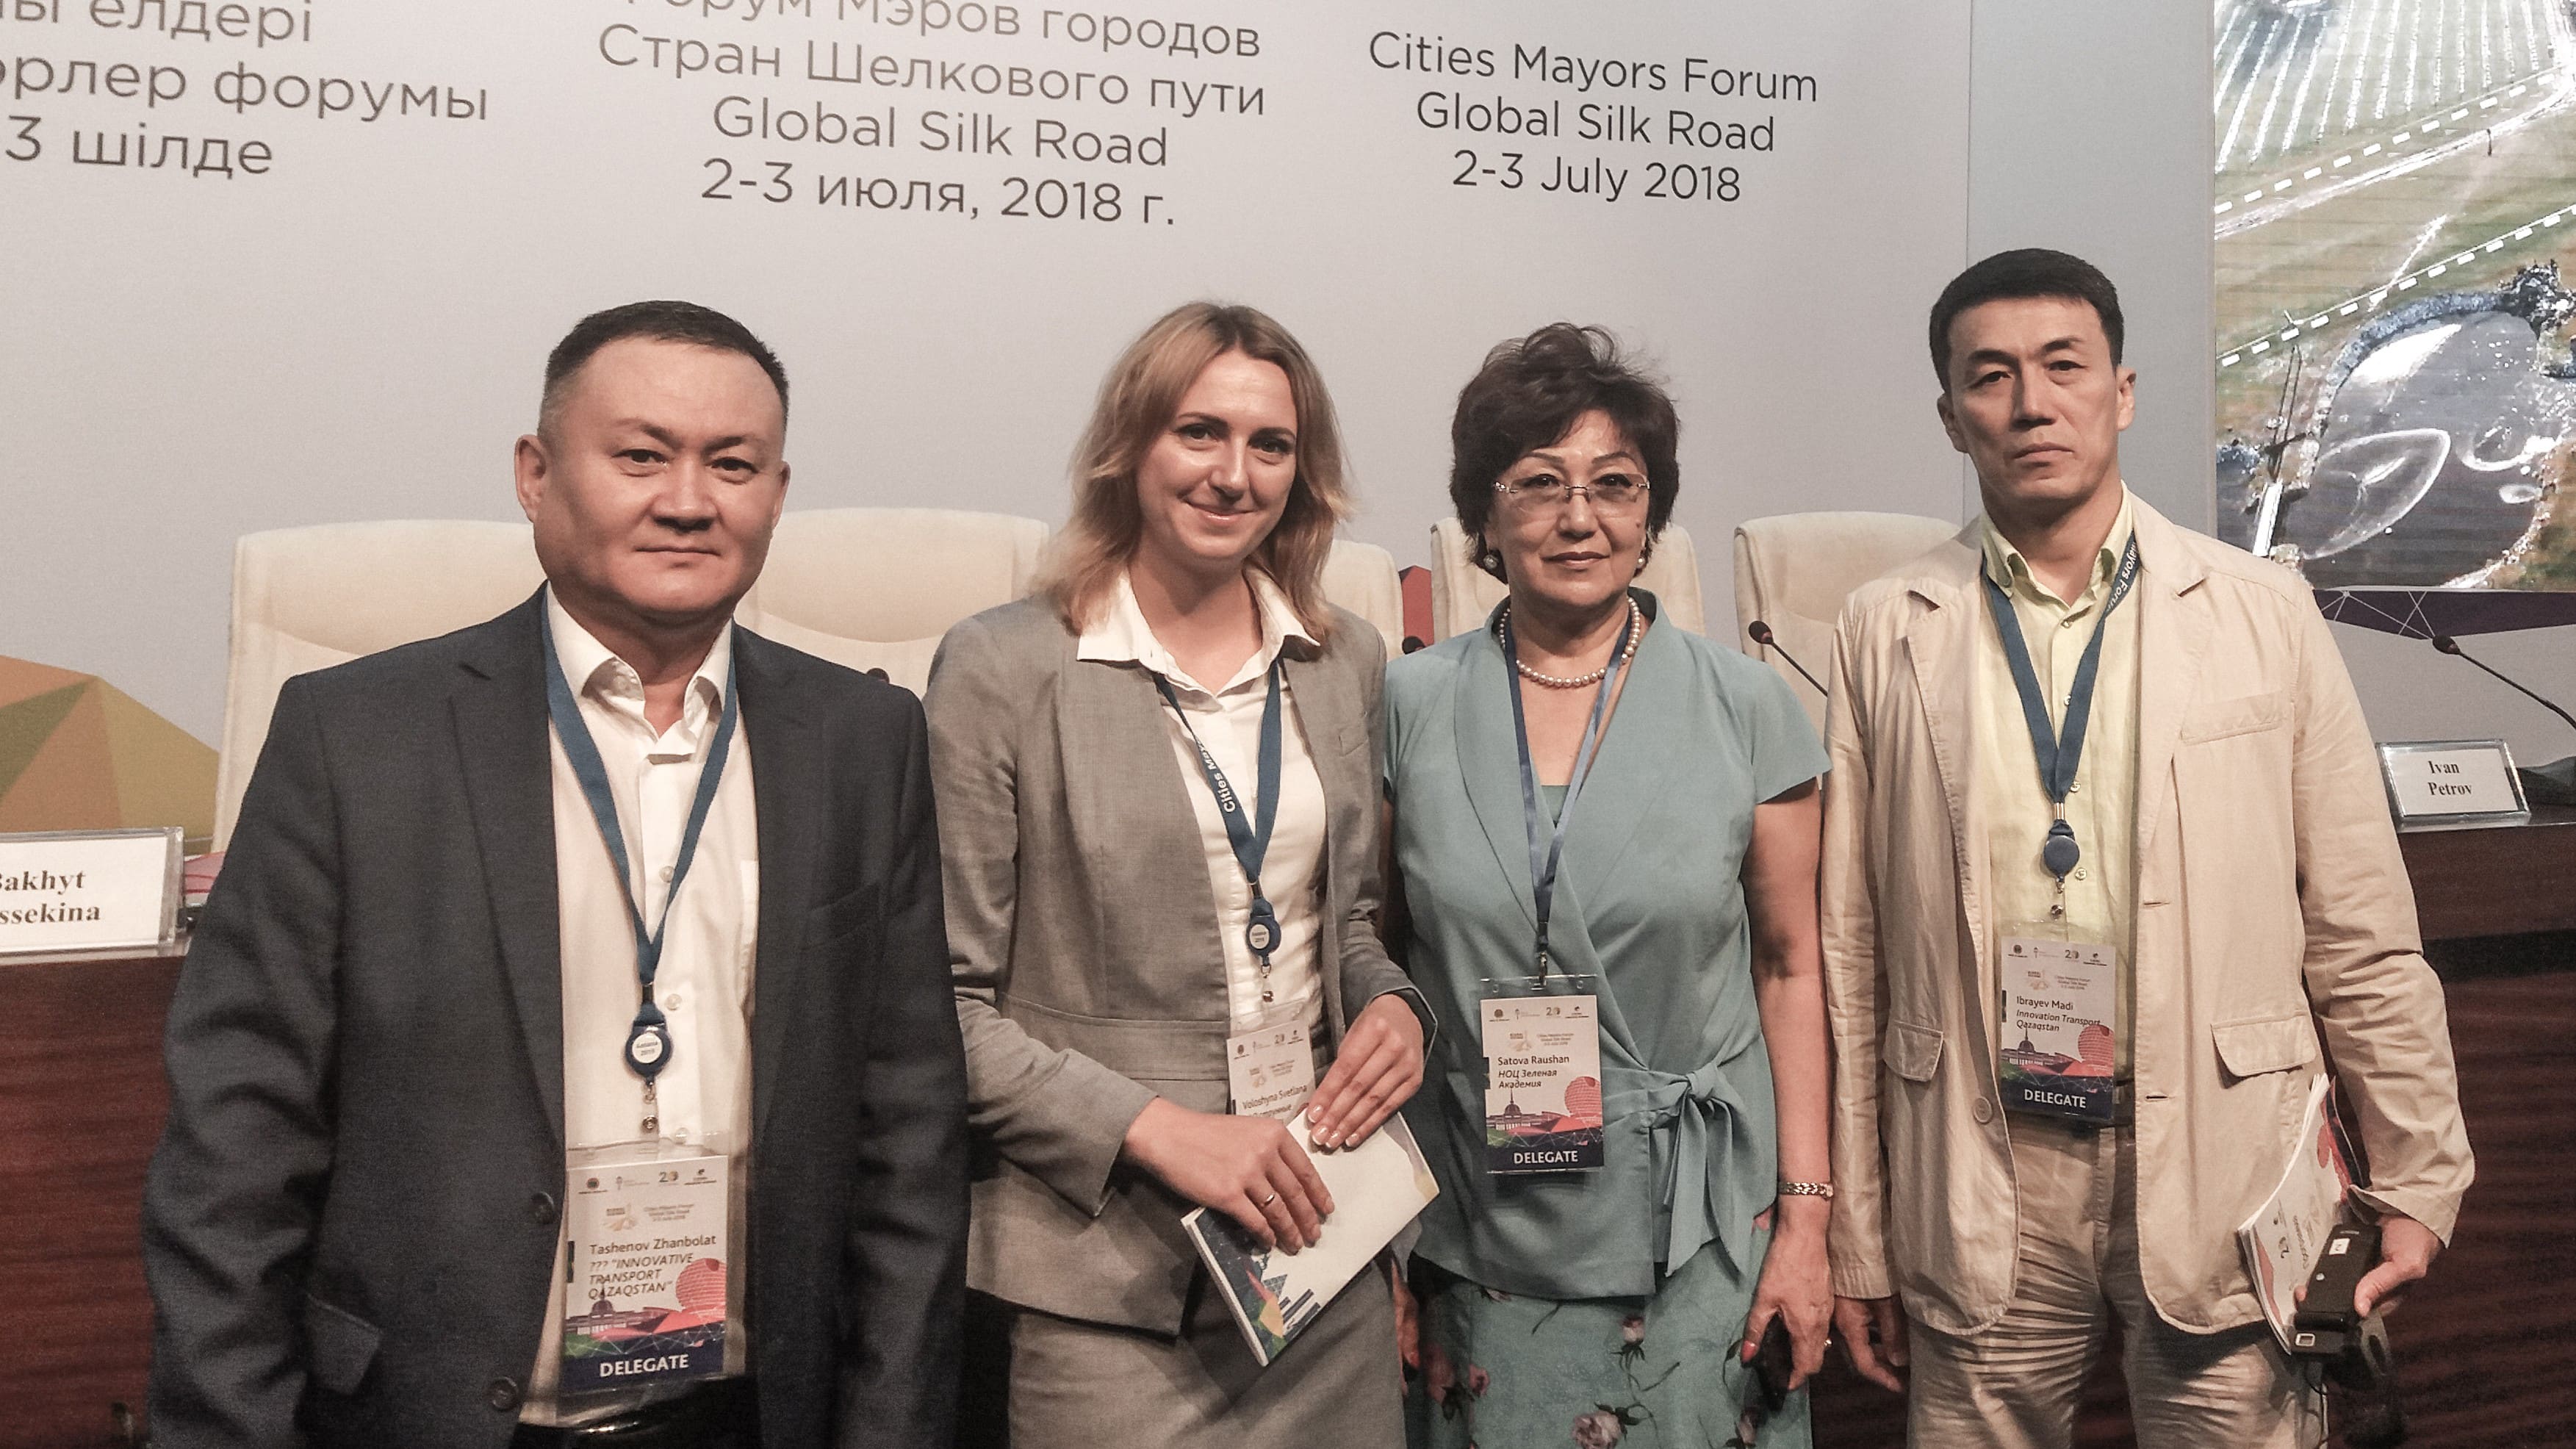 форум мэров городов стран шелкового пути (2)